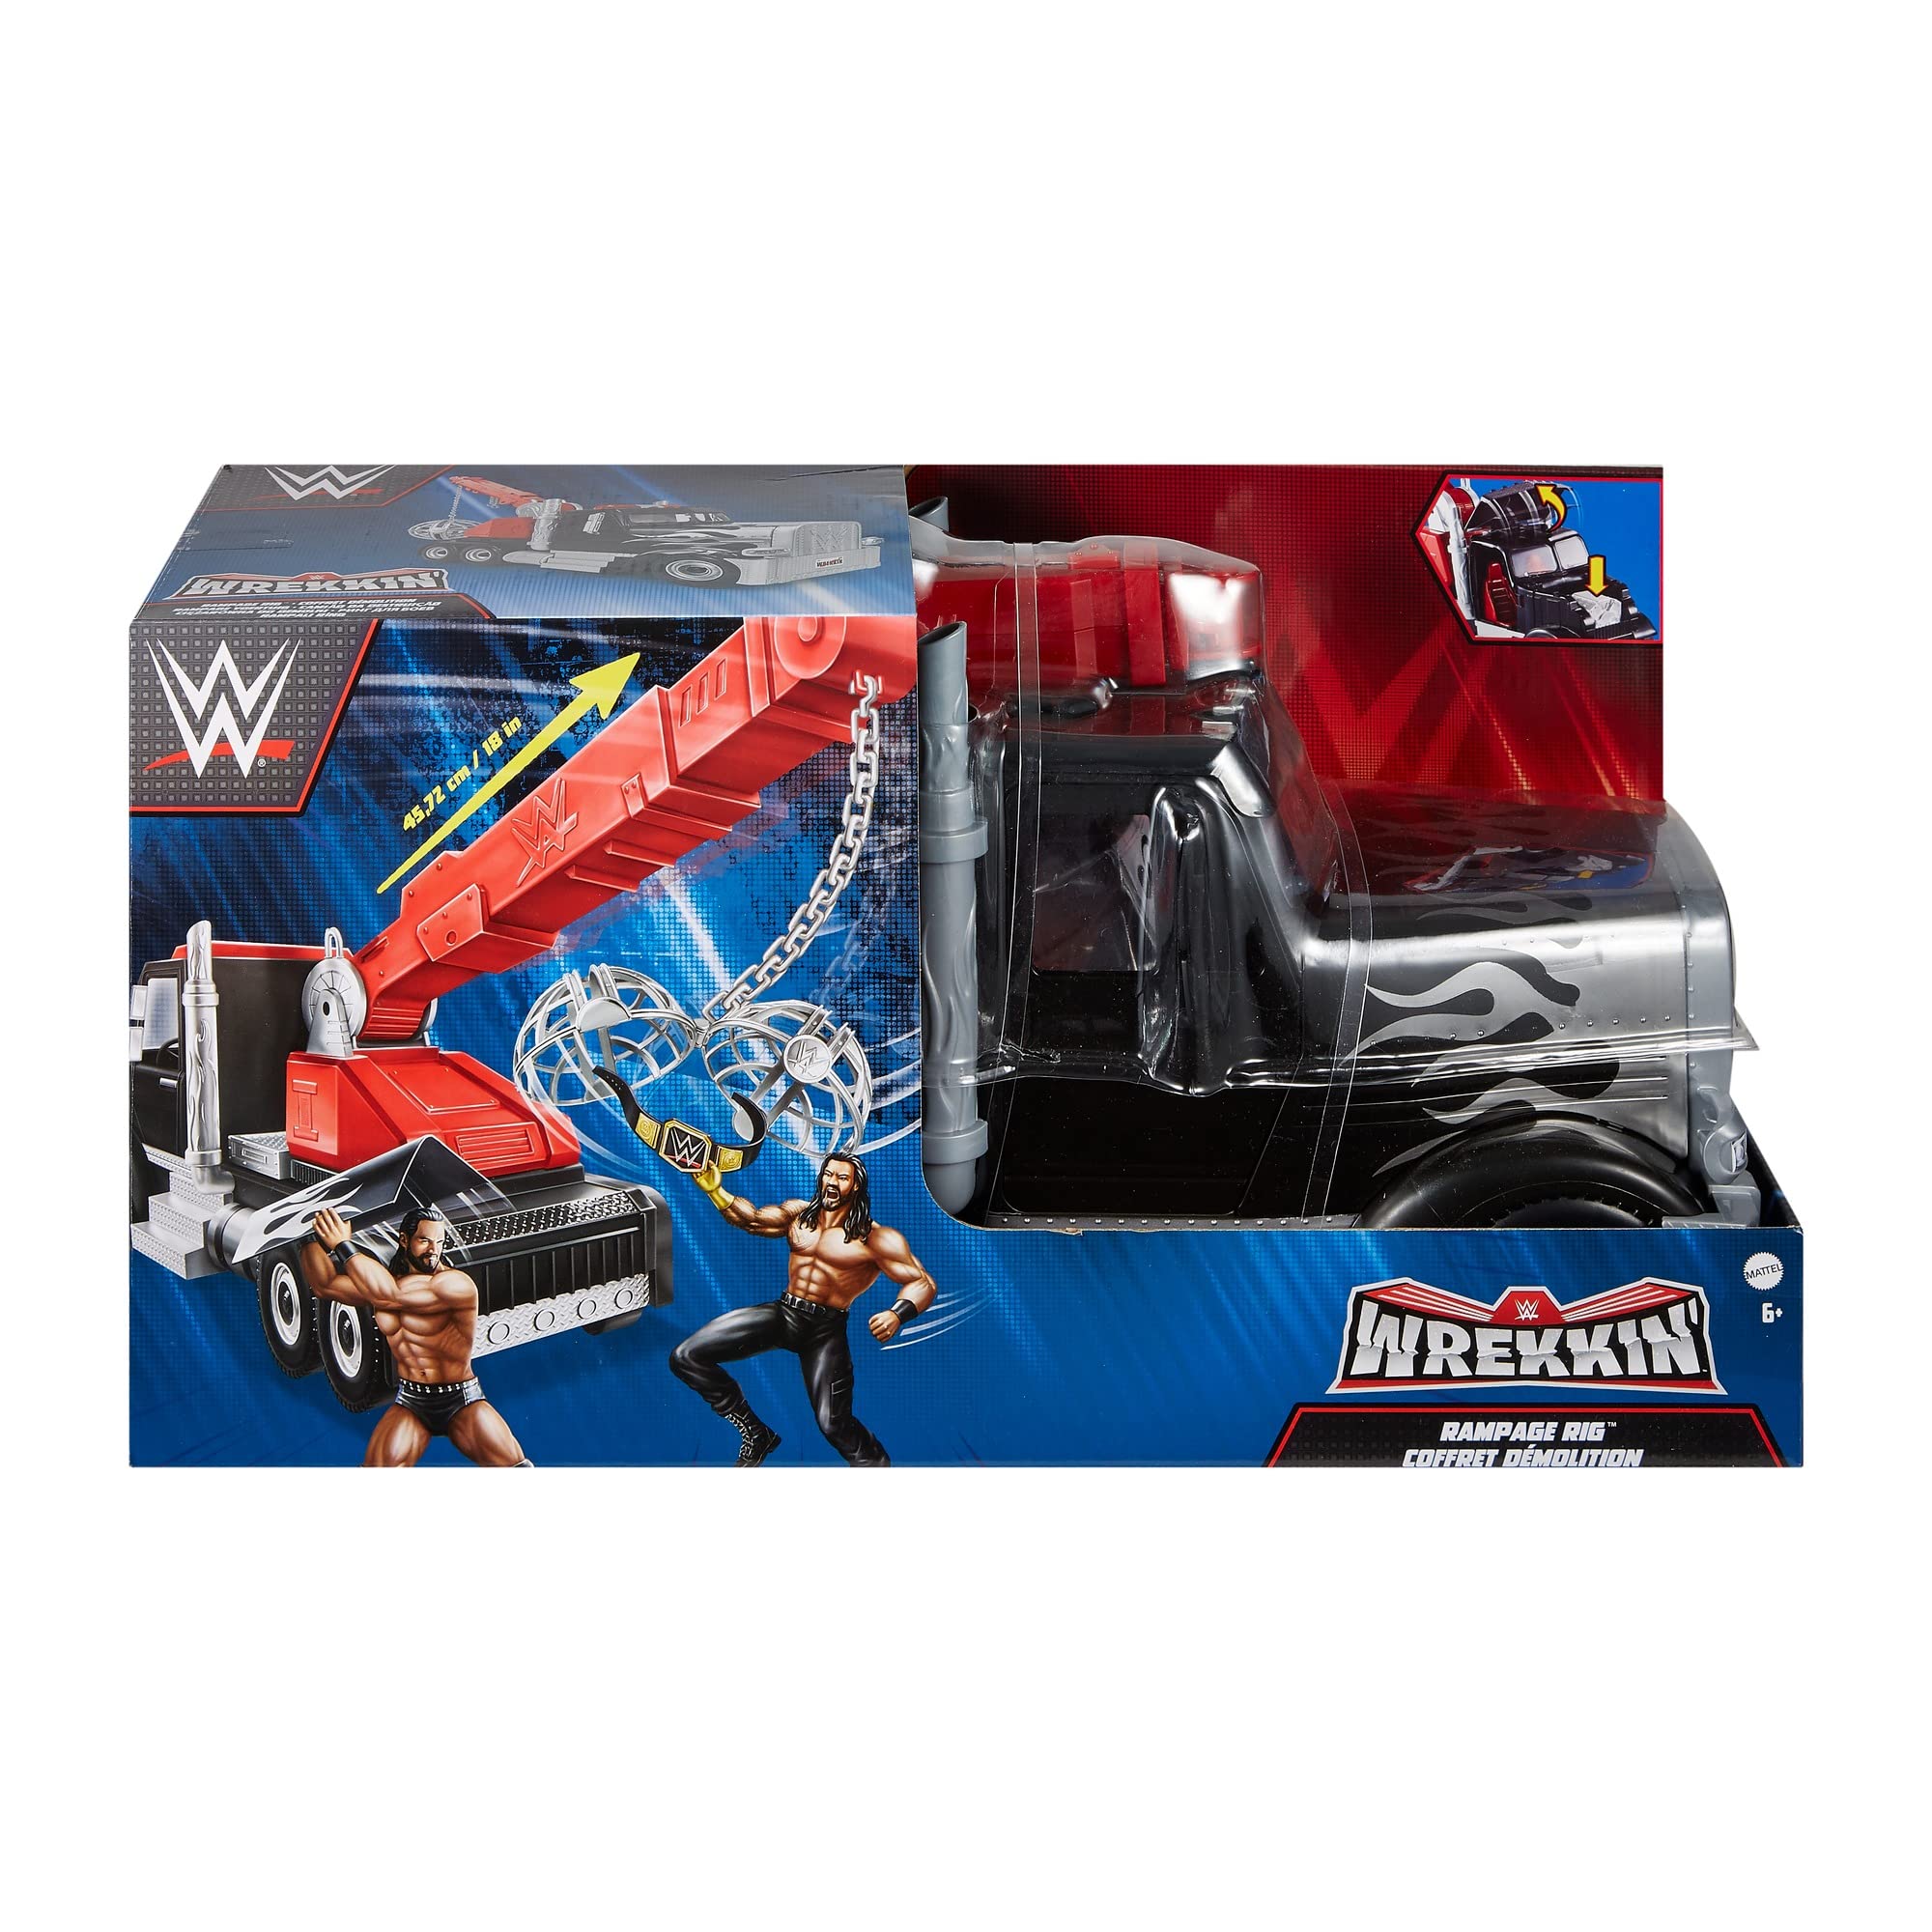 Mattel Rampage Rig Wrekkin Vehicle Breakaway Truck with Breakaway Wrekkin Ball, Championship, & Accessories, for 6-Inch Action Figure